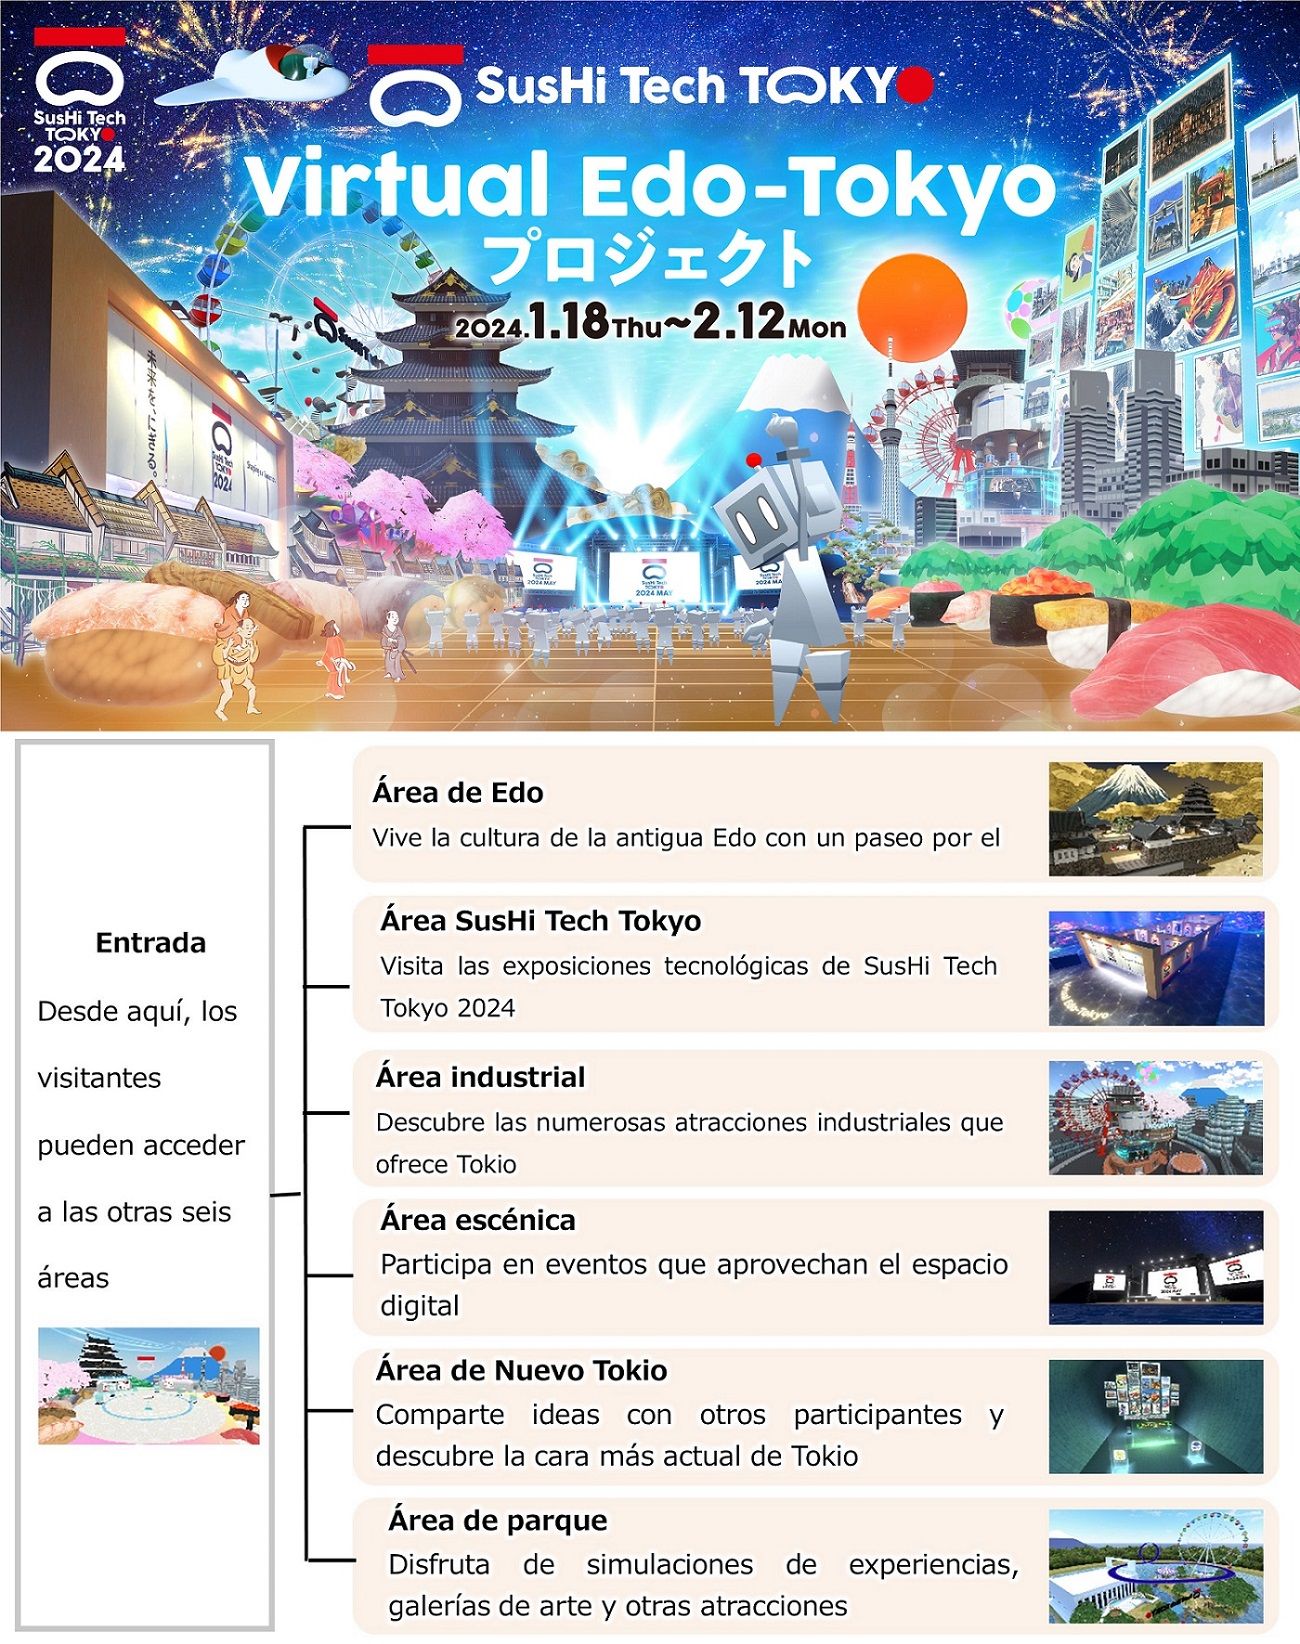 El Gobierno Metropolitano de Tokio (TMG) lanza The Virtual Edo-Tokyo Project 